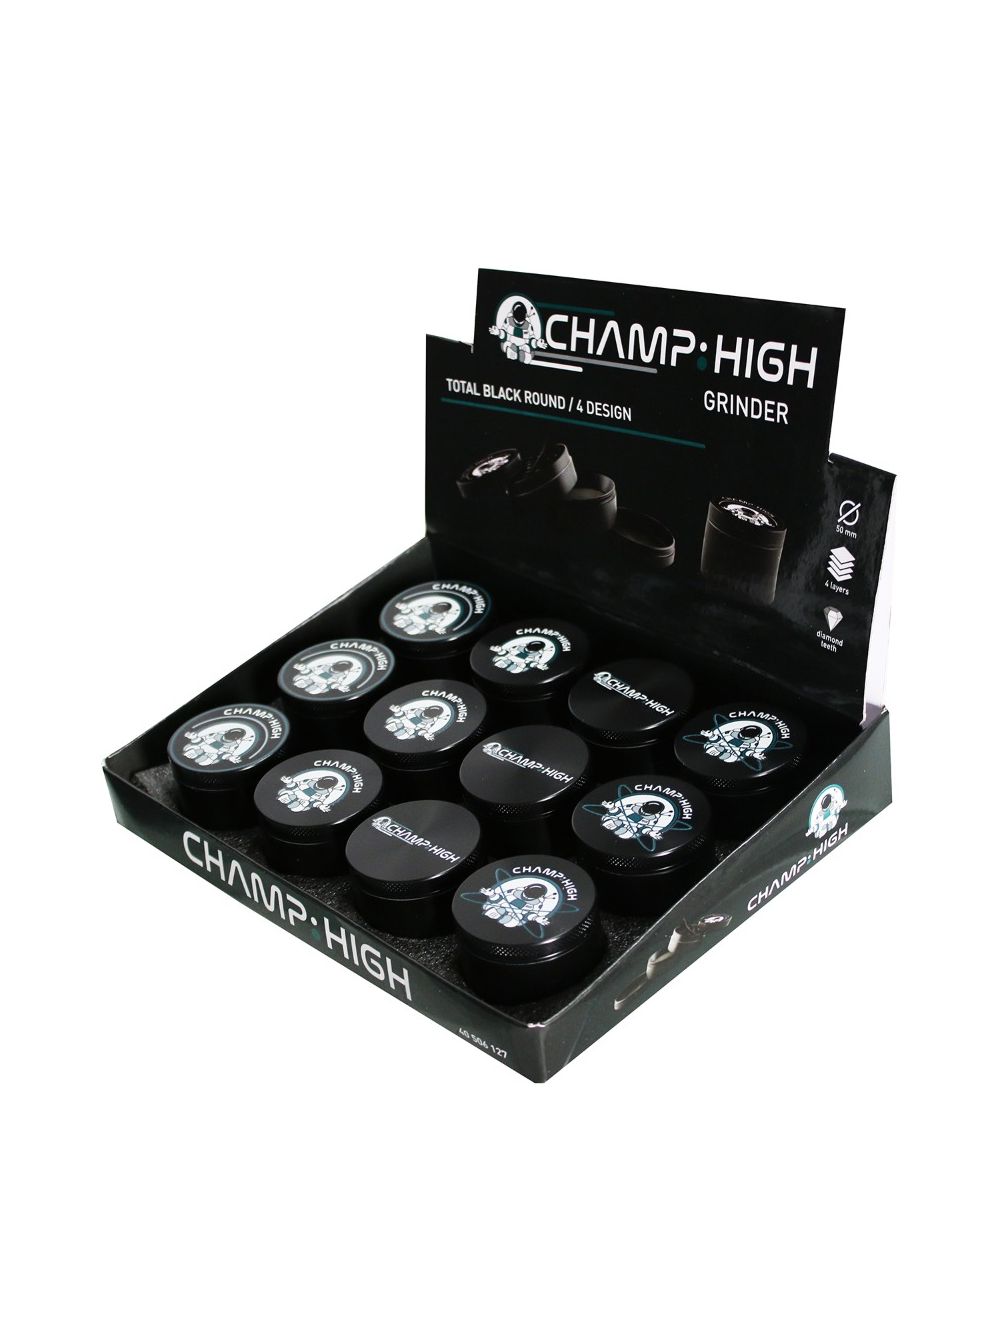 Grinder Champ High Original - Buy 4-part Metal Grinder Here